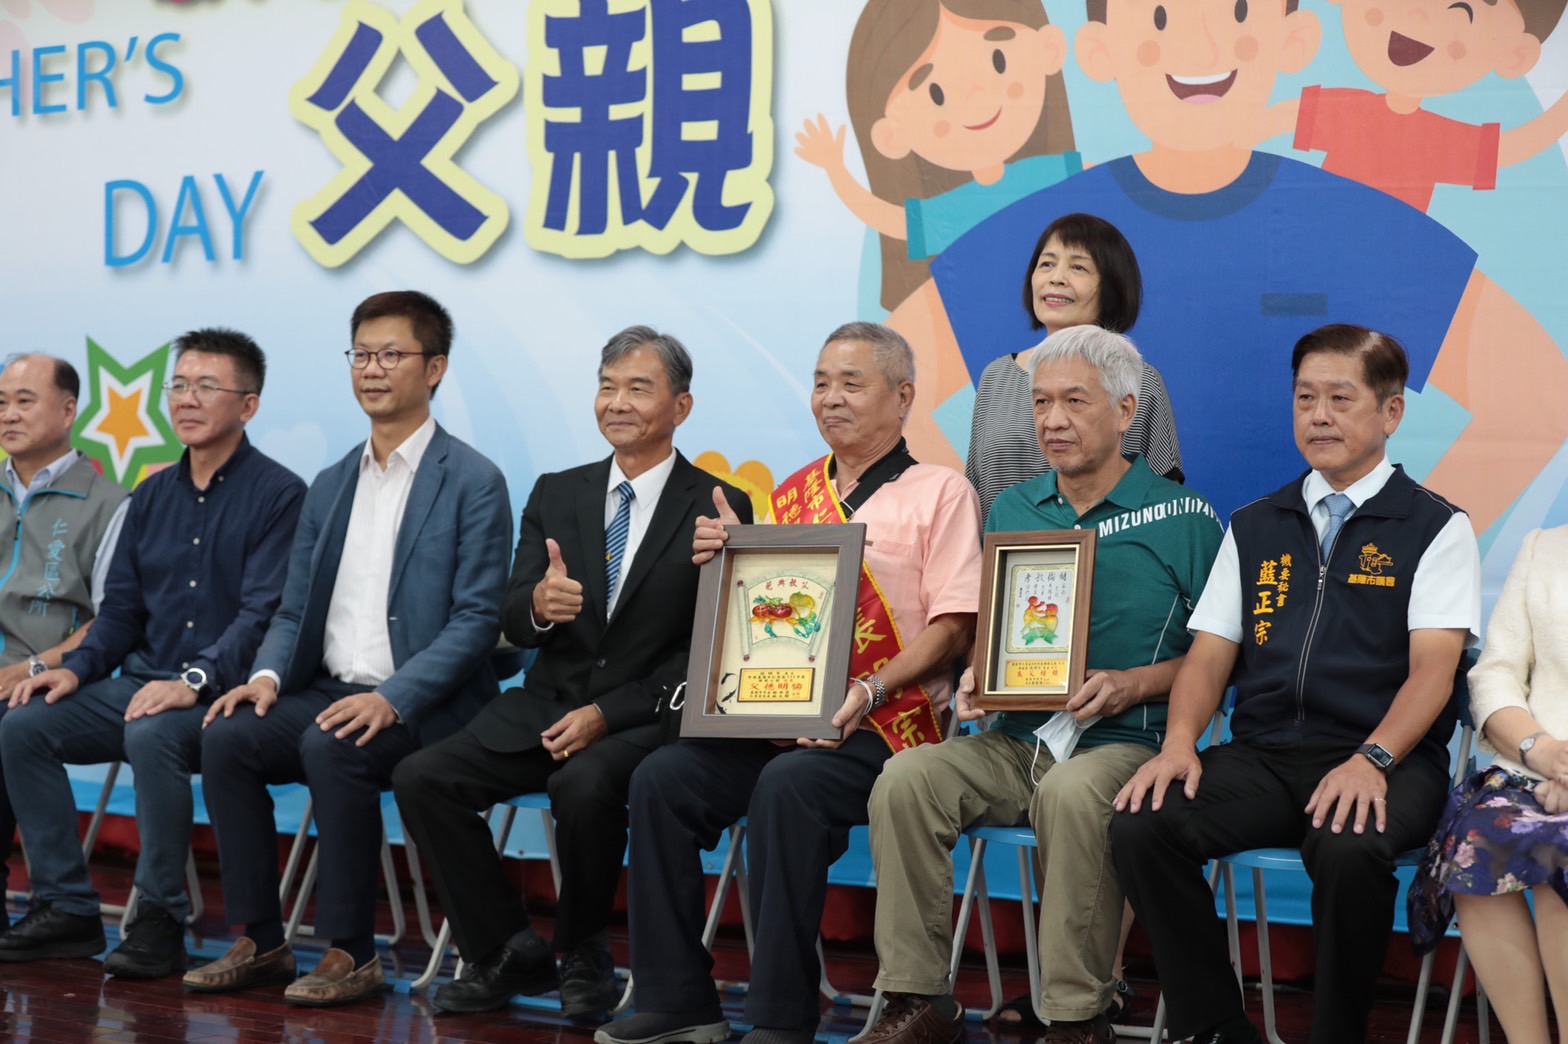 副市長林永發表揚仁愛區模範父親及好人好事代表 (6)